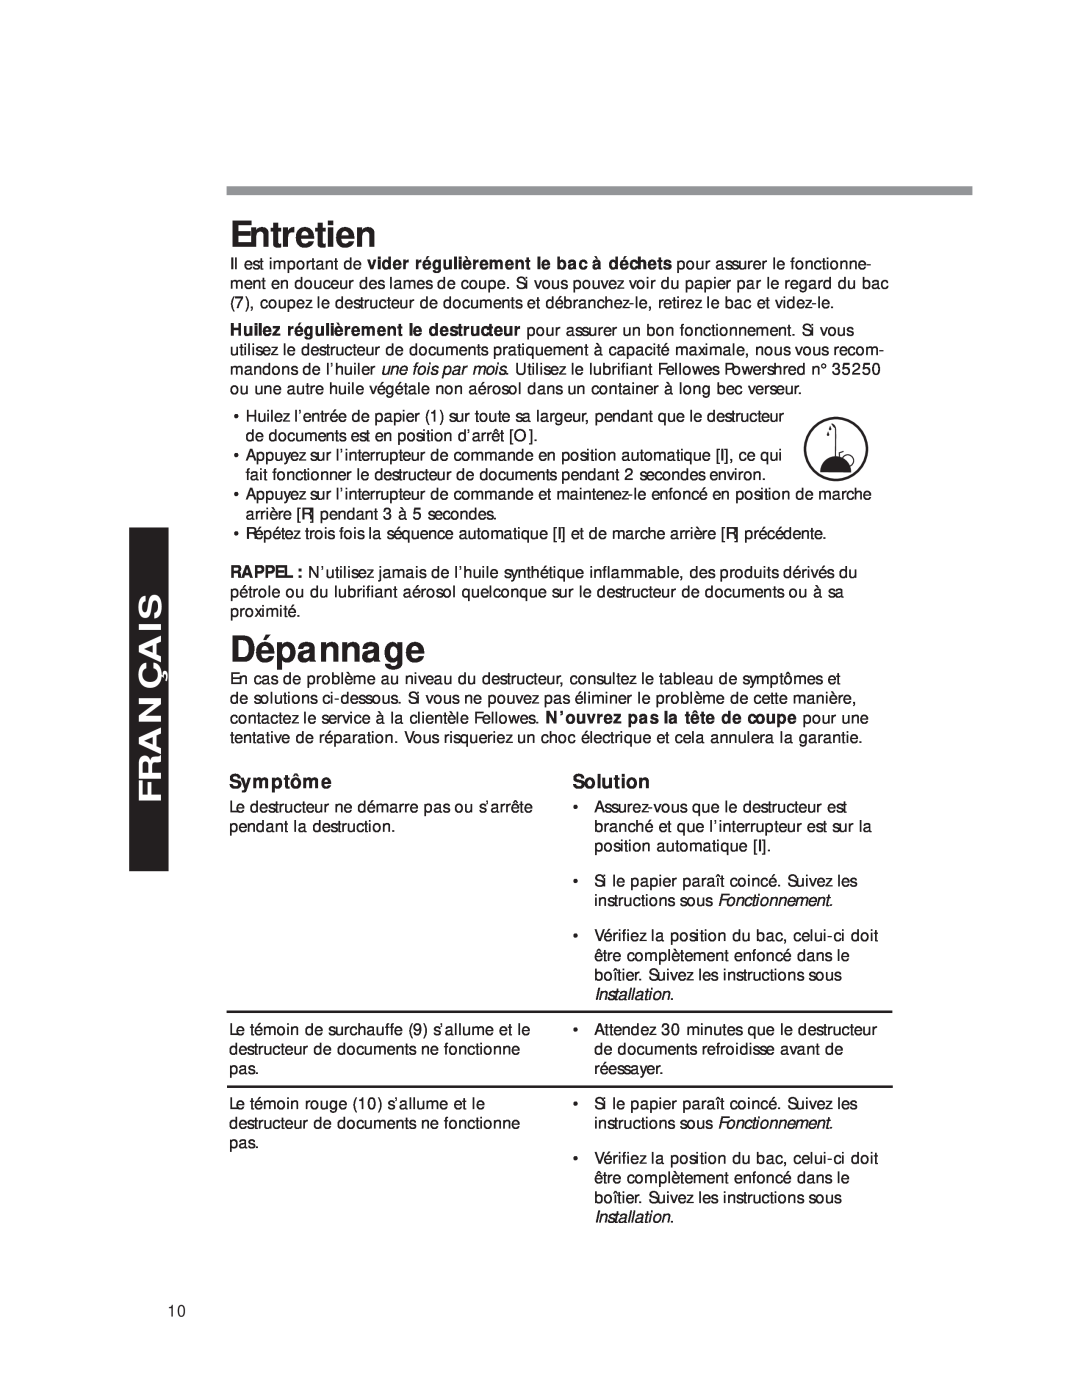 Fellowes DM8C manual Entretien, Dépannage, Symptôme, Solution, Installation, Français 